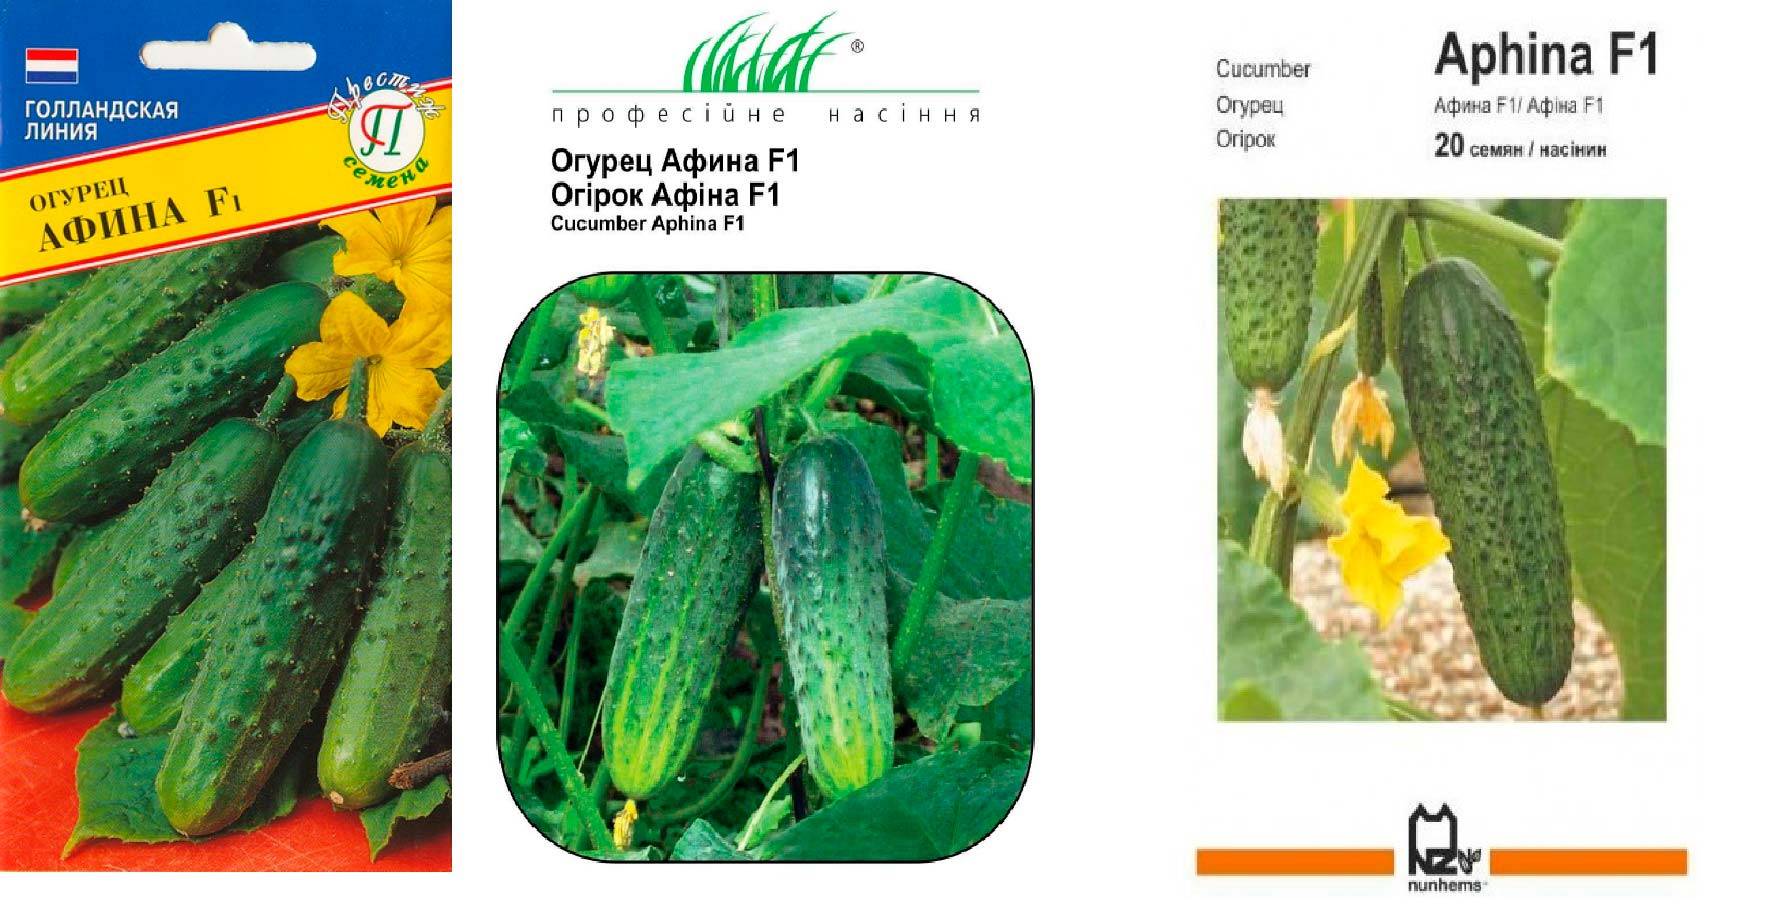 Голландский гибрид огурцов «барвина f1»: фото, видео, описание, посадка, характеристика, урожайность, отзывы